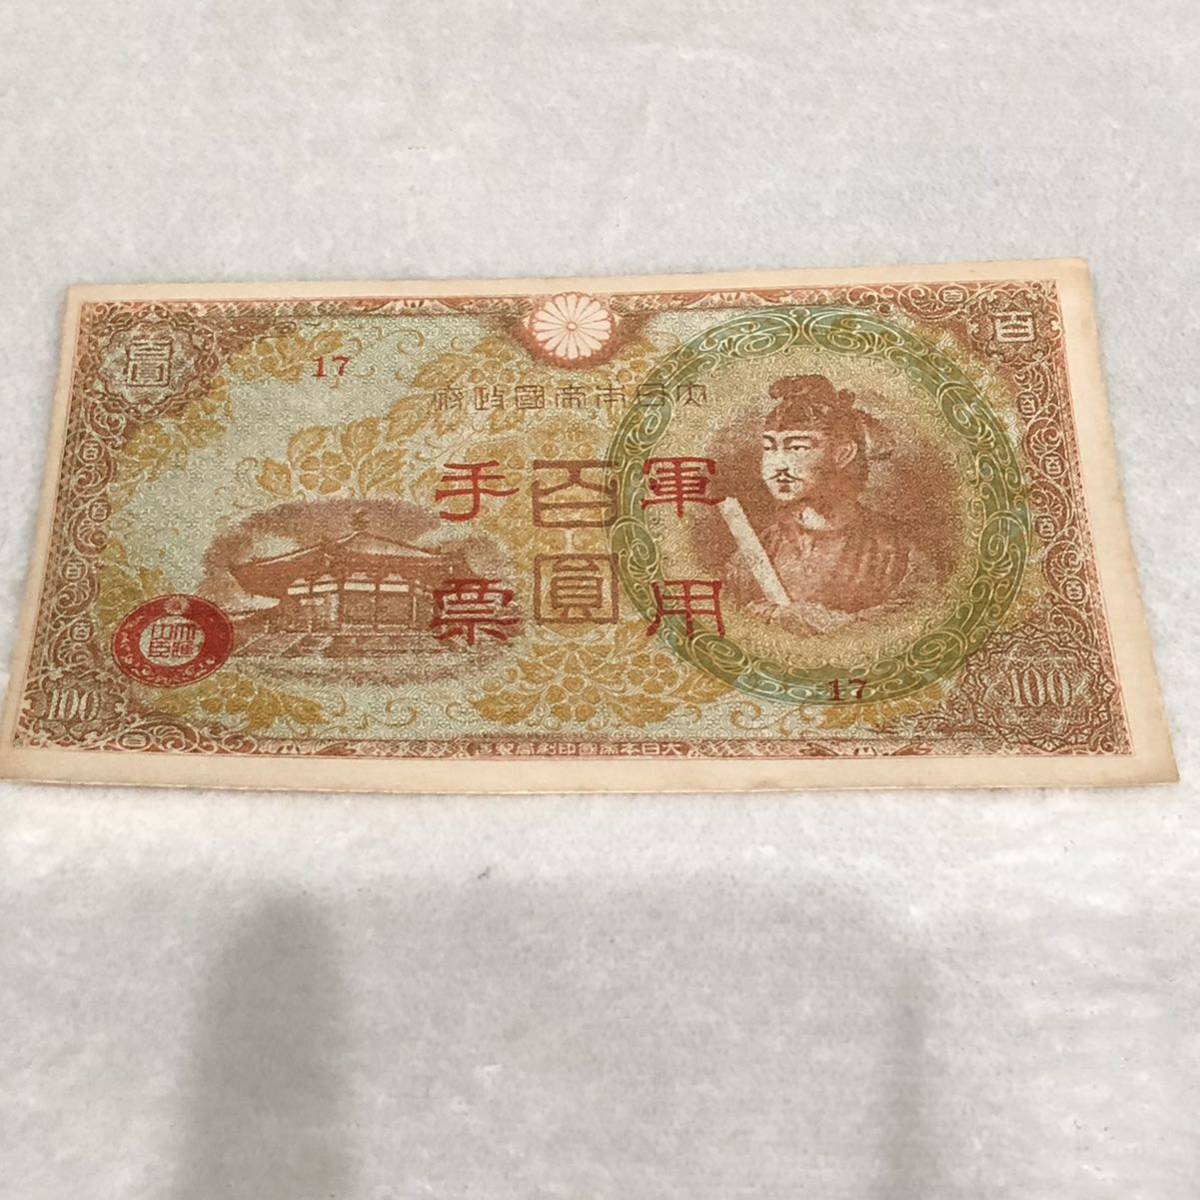 軍用手票 まとめ 122枚 コレクション 紙幣 旧紙幣 聖徳太子 古紙幣 _画像2